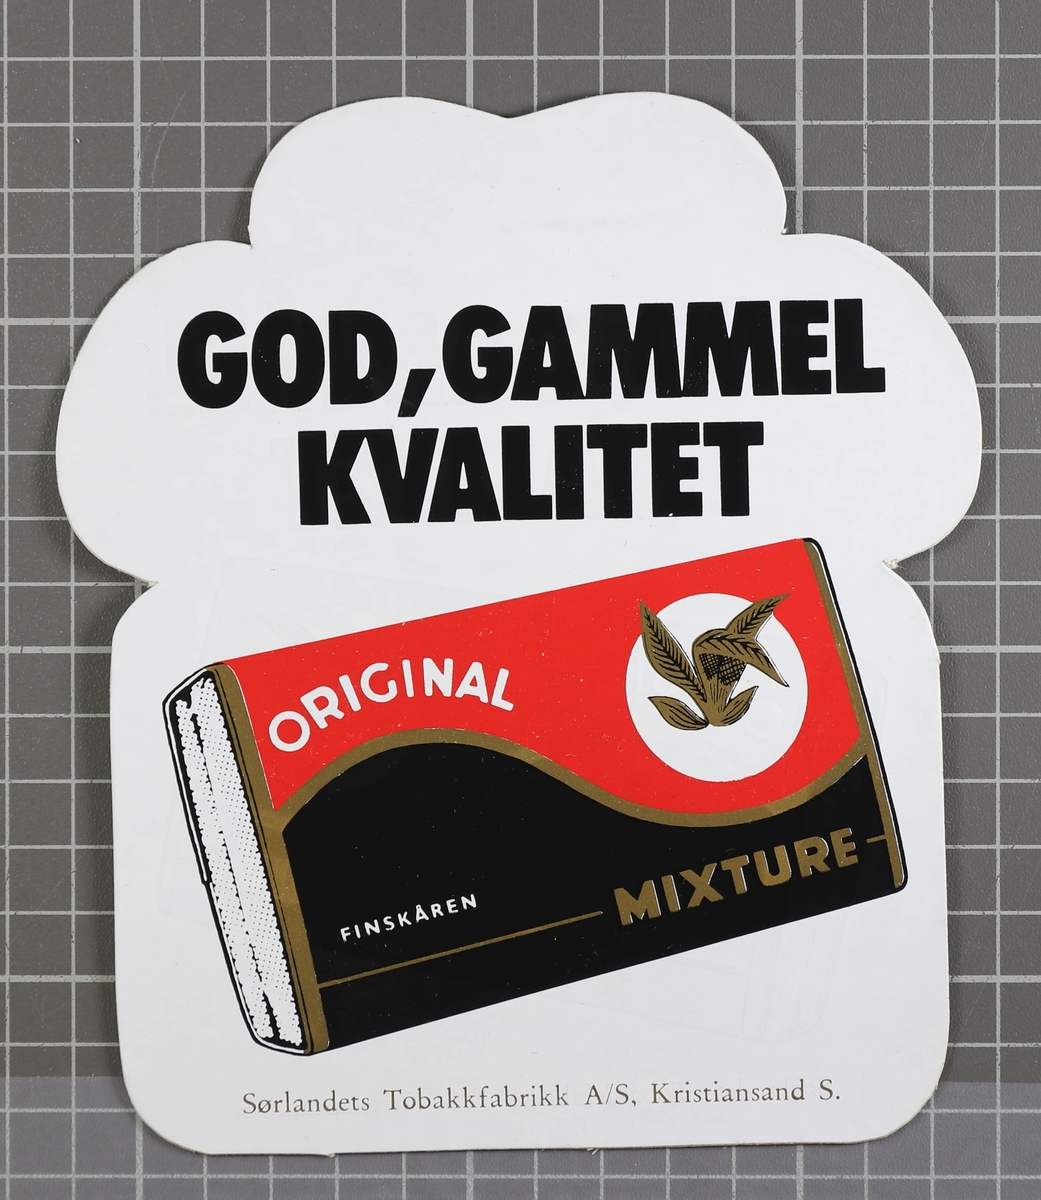 En pakke Original Mixture, over står teksten "God, gammel kvalitet"